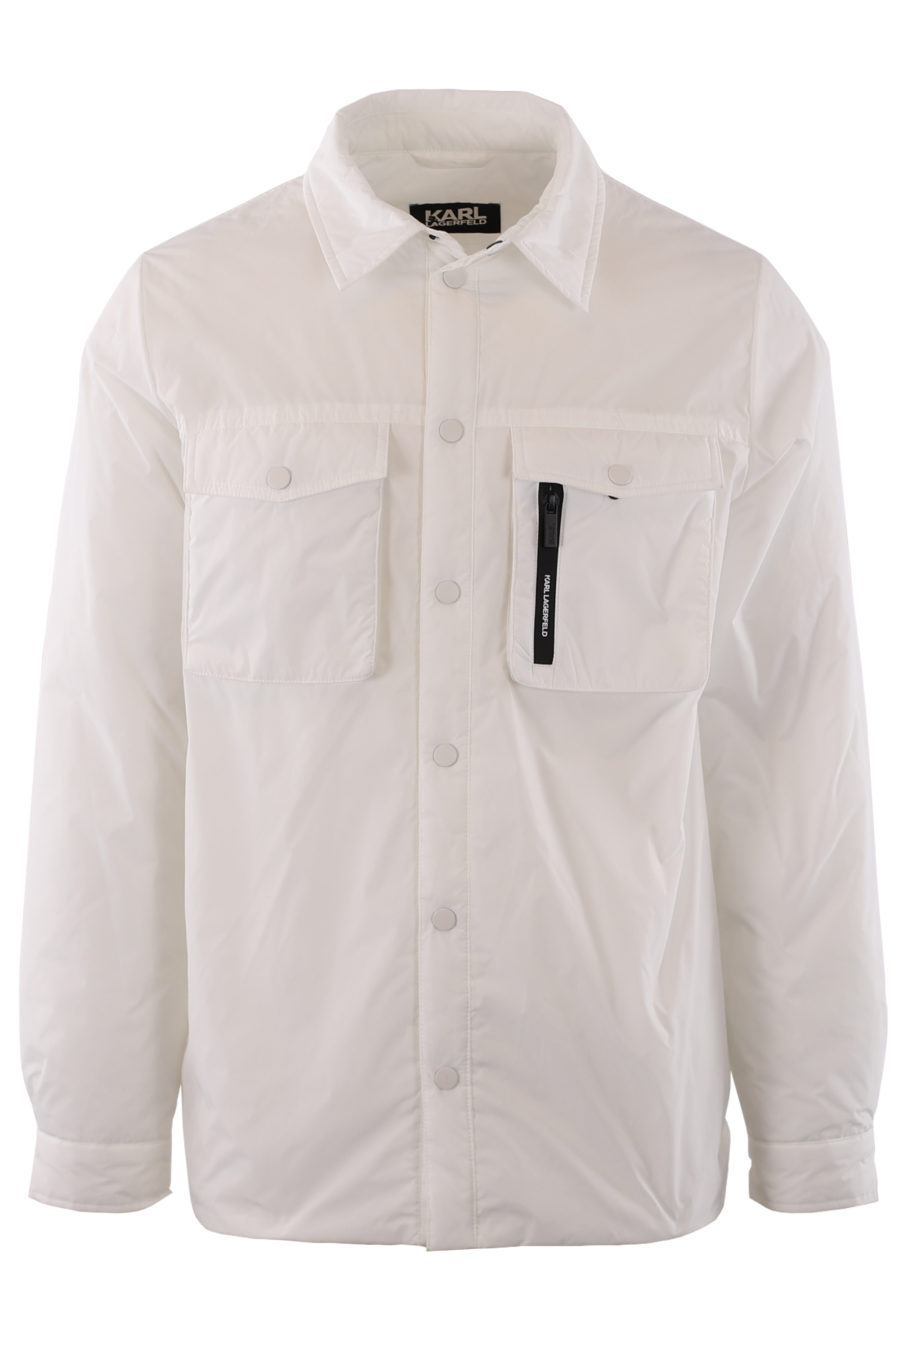 Casaco impermeável branco com botões - IMG 9188